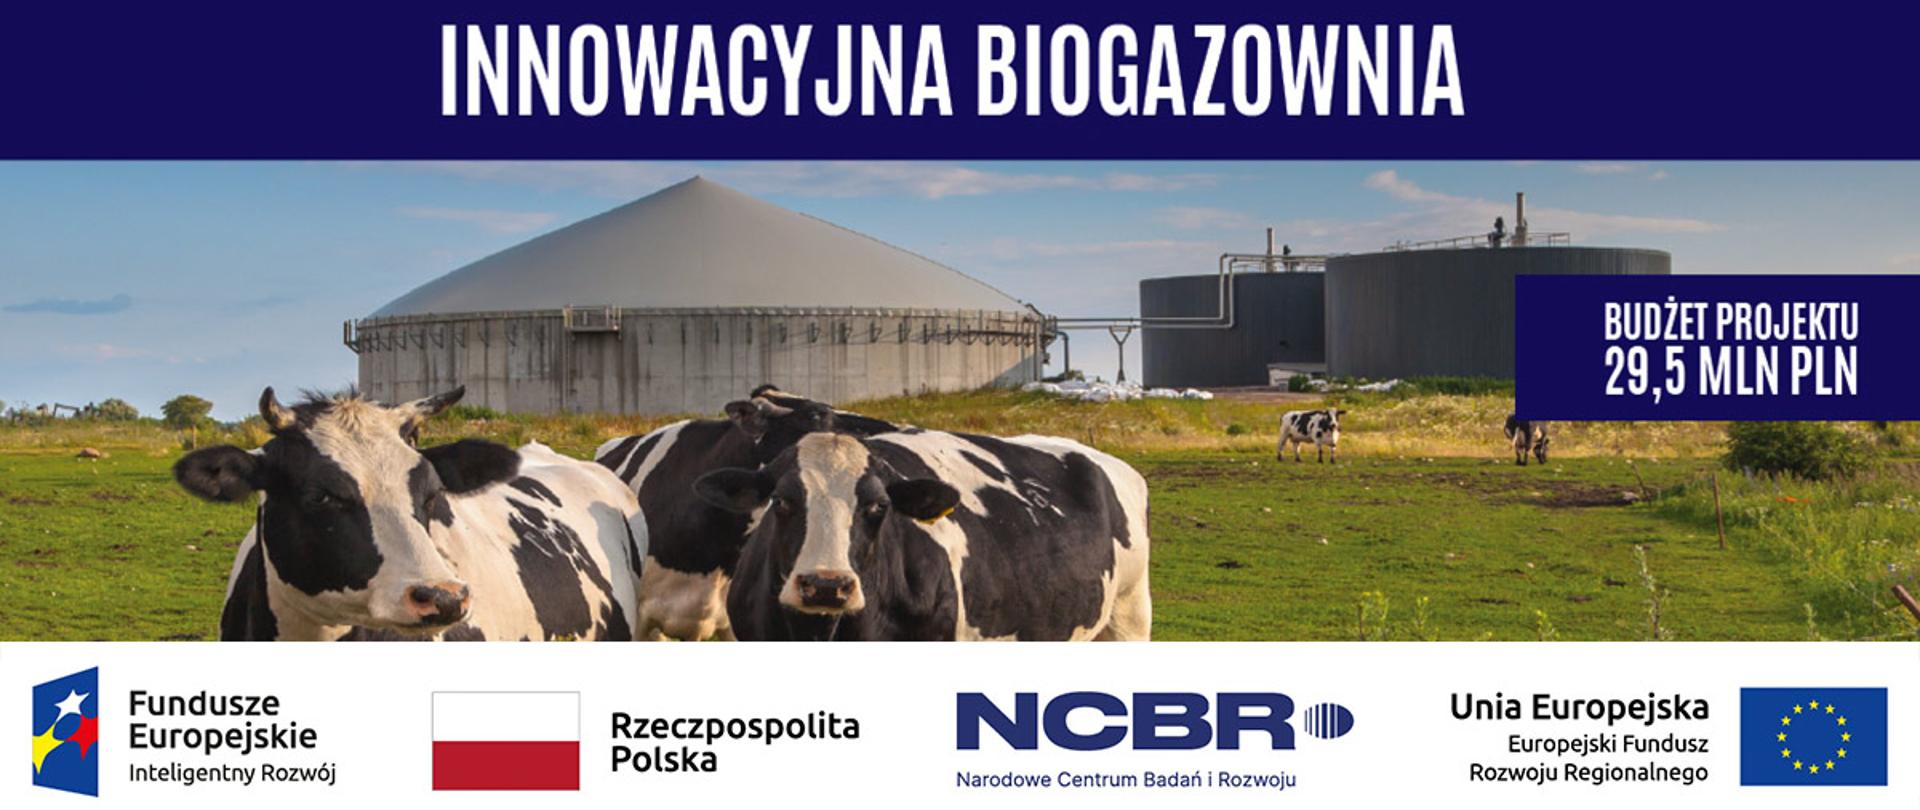 innowacyjna-biogazownia